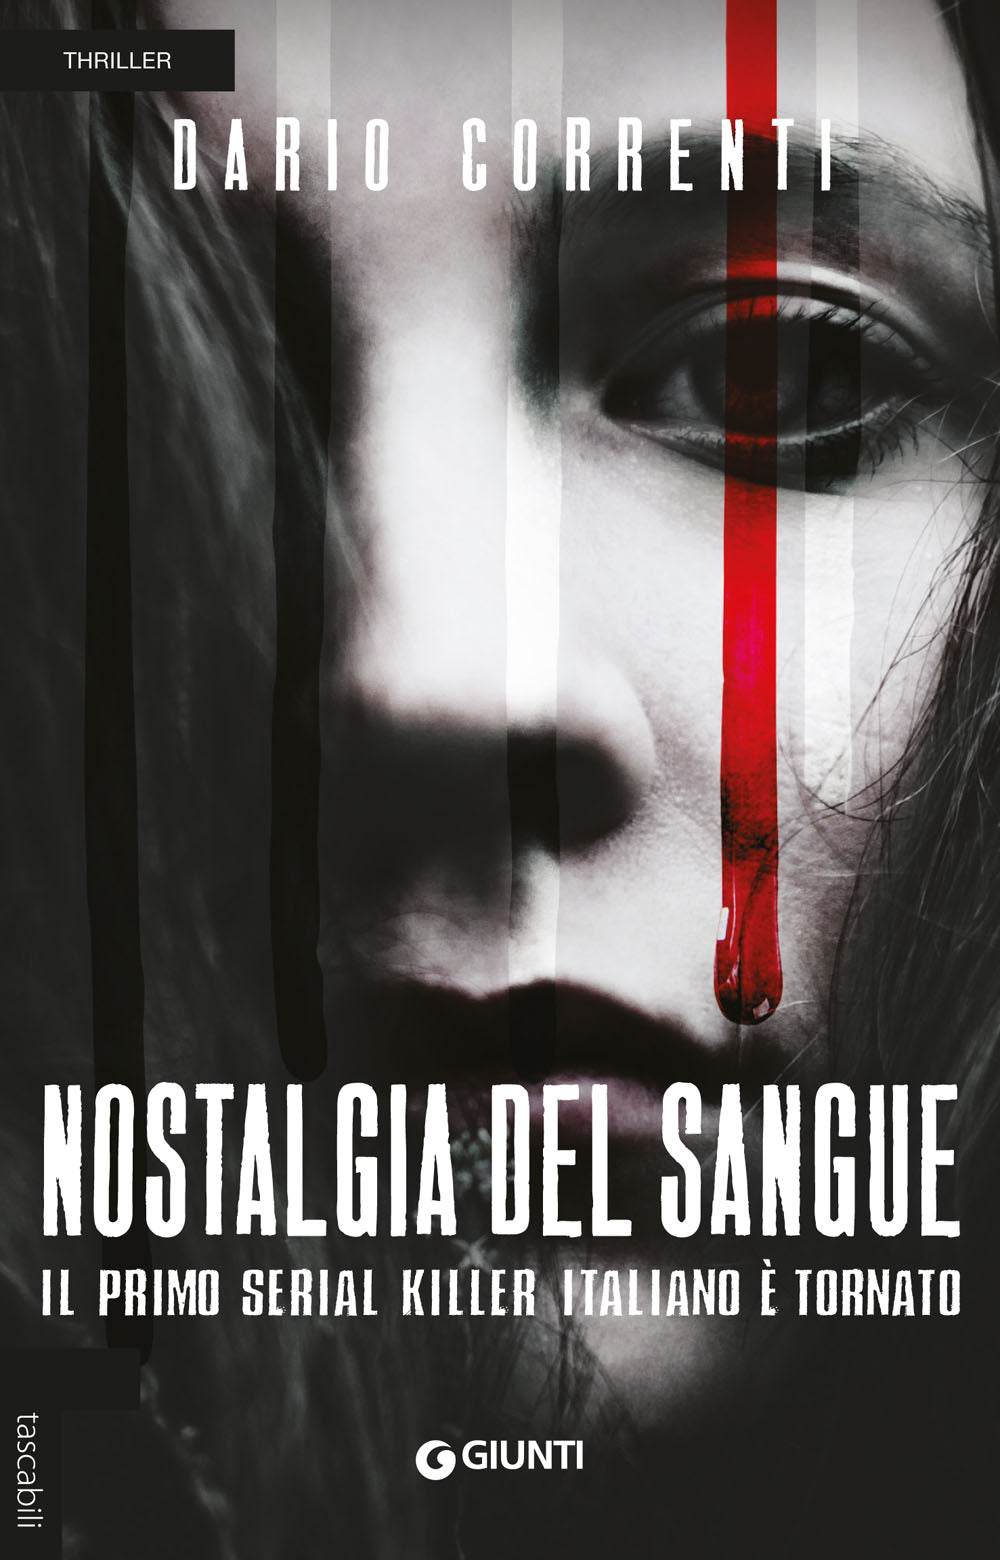 Nostalgia del sangue::Il primo serial killer italiano è tornato